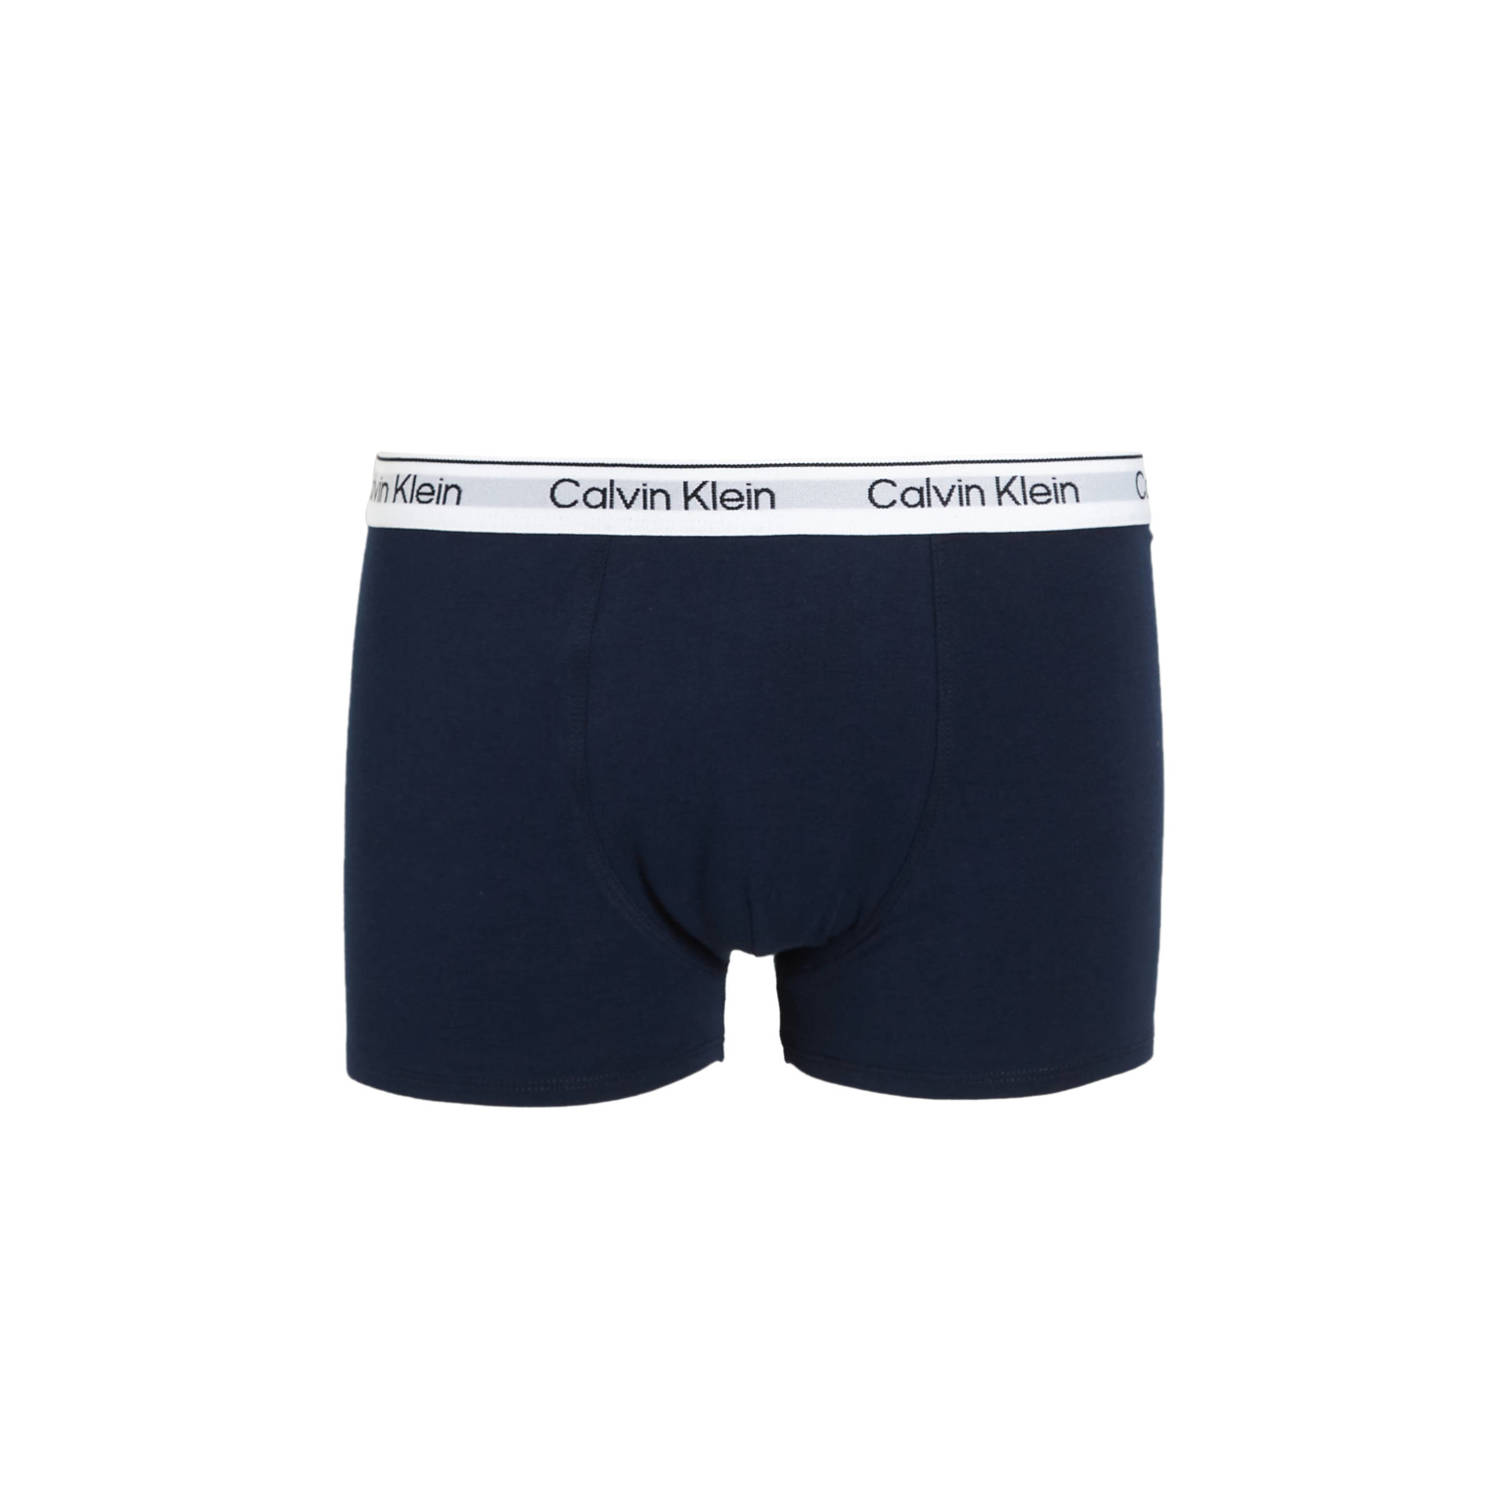 Calvin Klein boxershort set van 5 wit grijs limegroen donkergroen navy